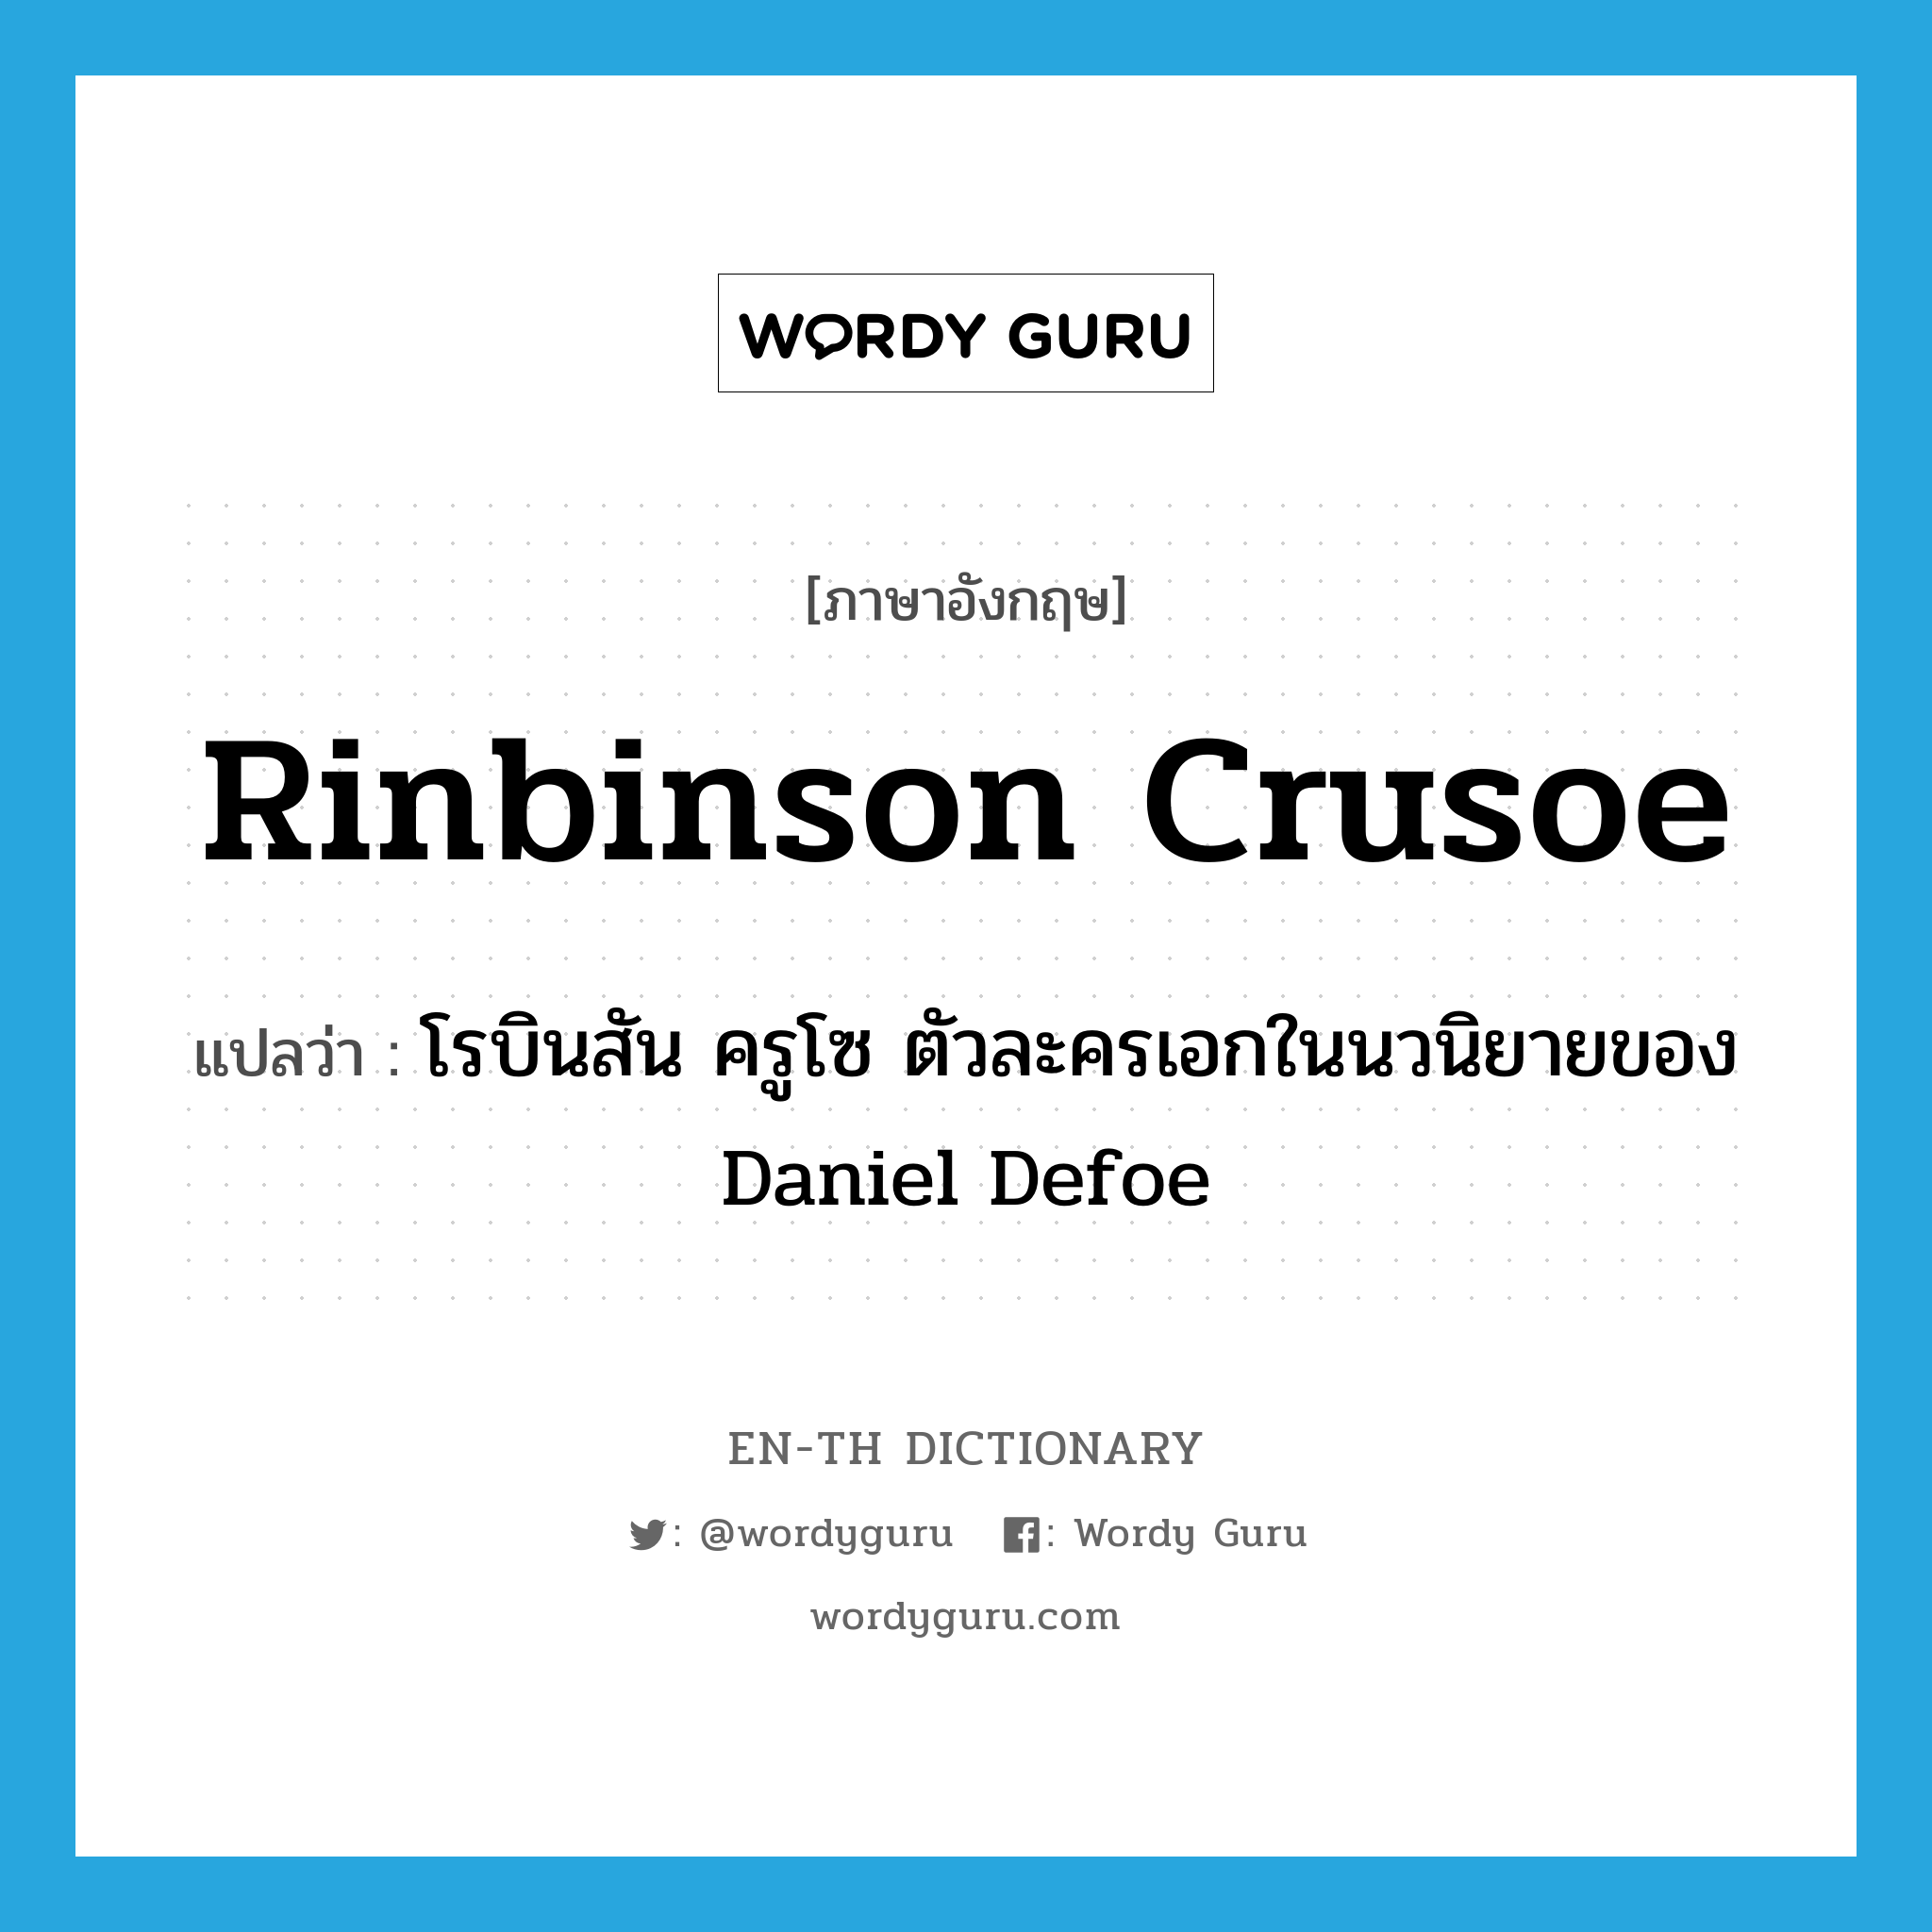 Rinbinson Crusoe แปลว่า?, คำศัพท์ภาษาอังกฤษ Rinbinson Crusoe แปลว่า โรบินสัน ครูโซ ตัวละครเอกในนวนิยายของ Daniel Defoe ประเภท N หมวด N